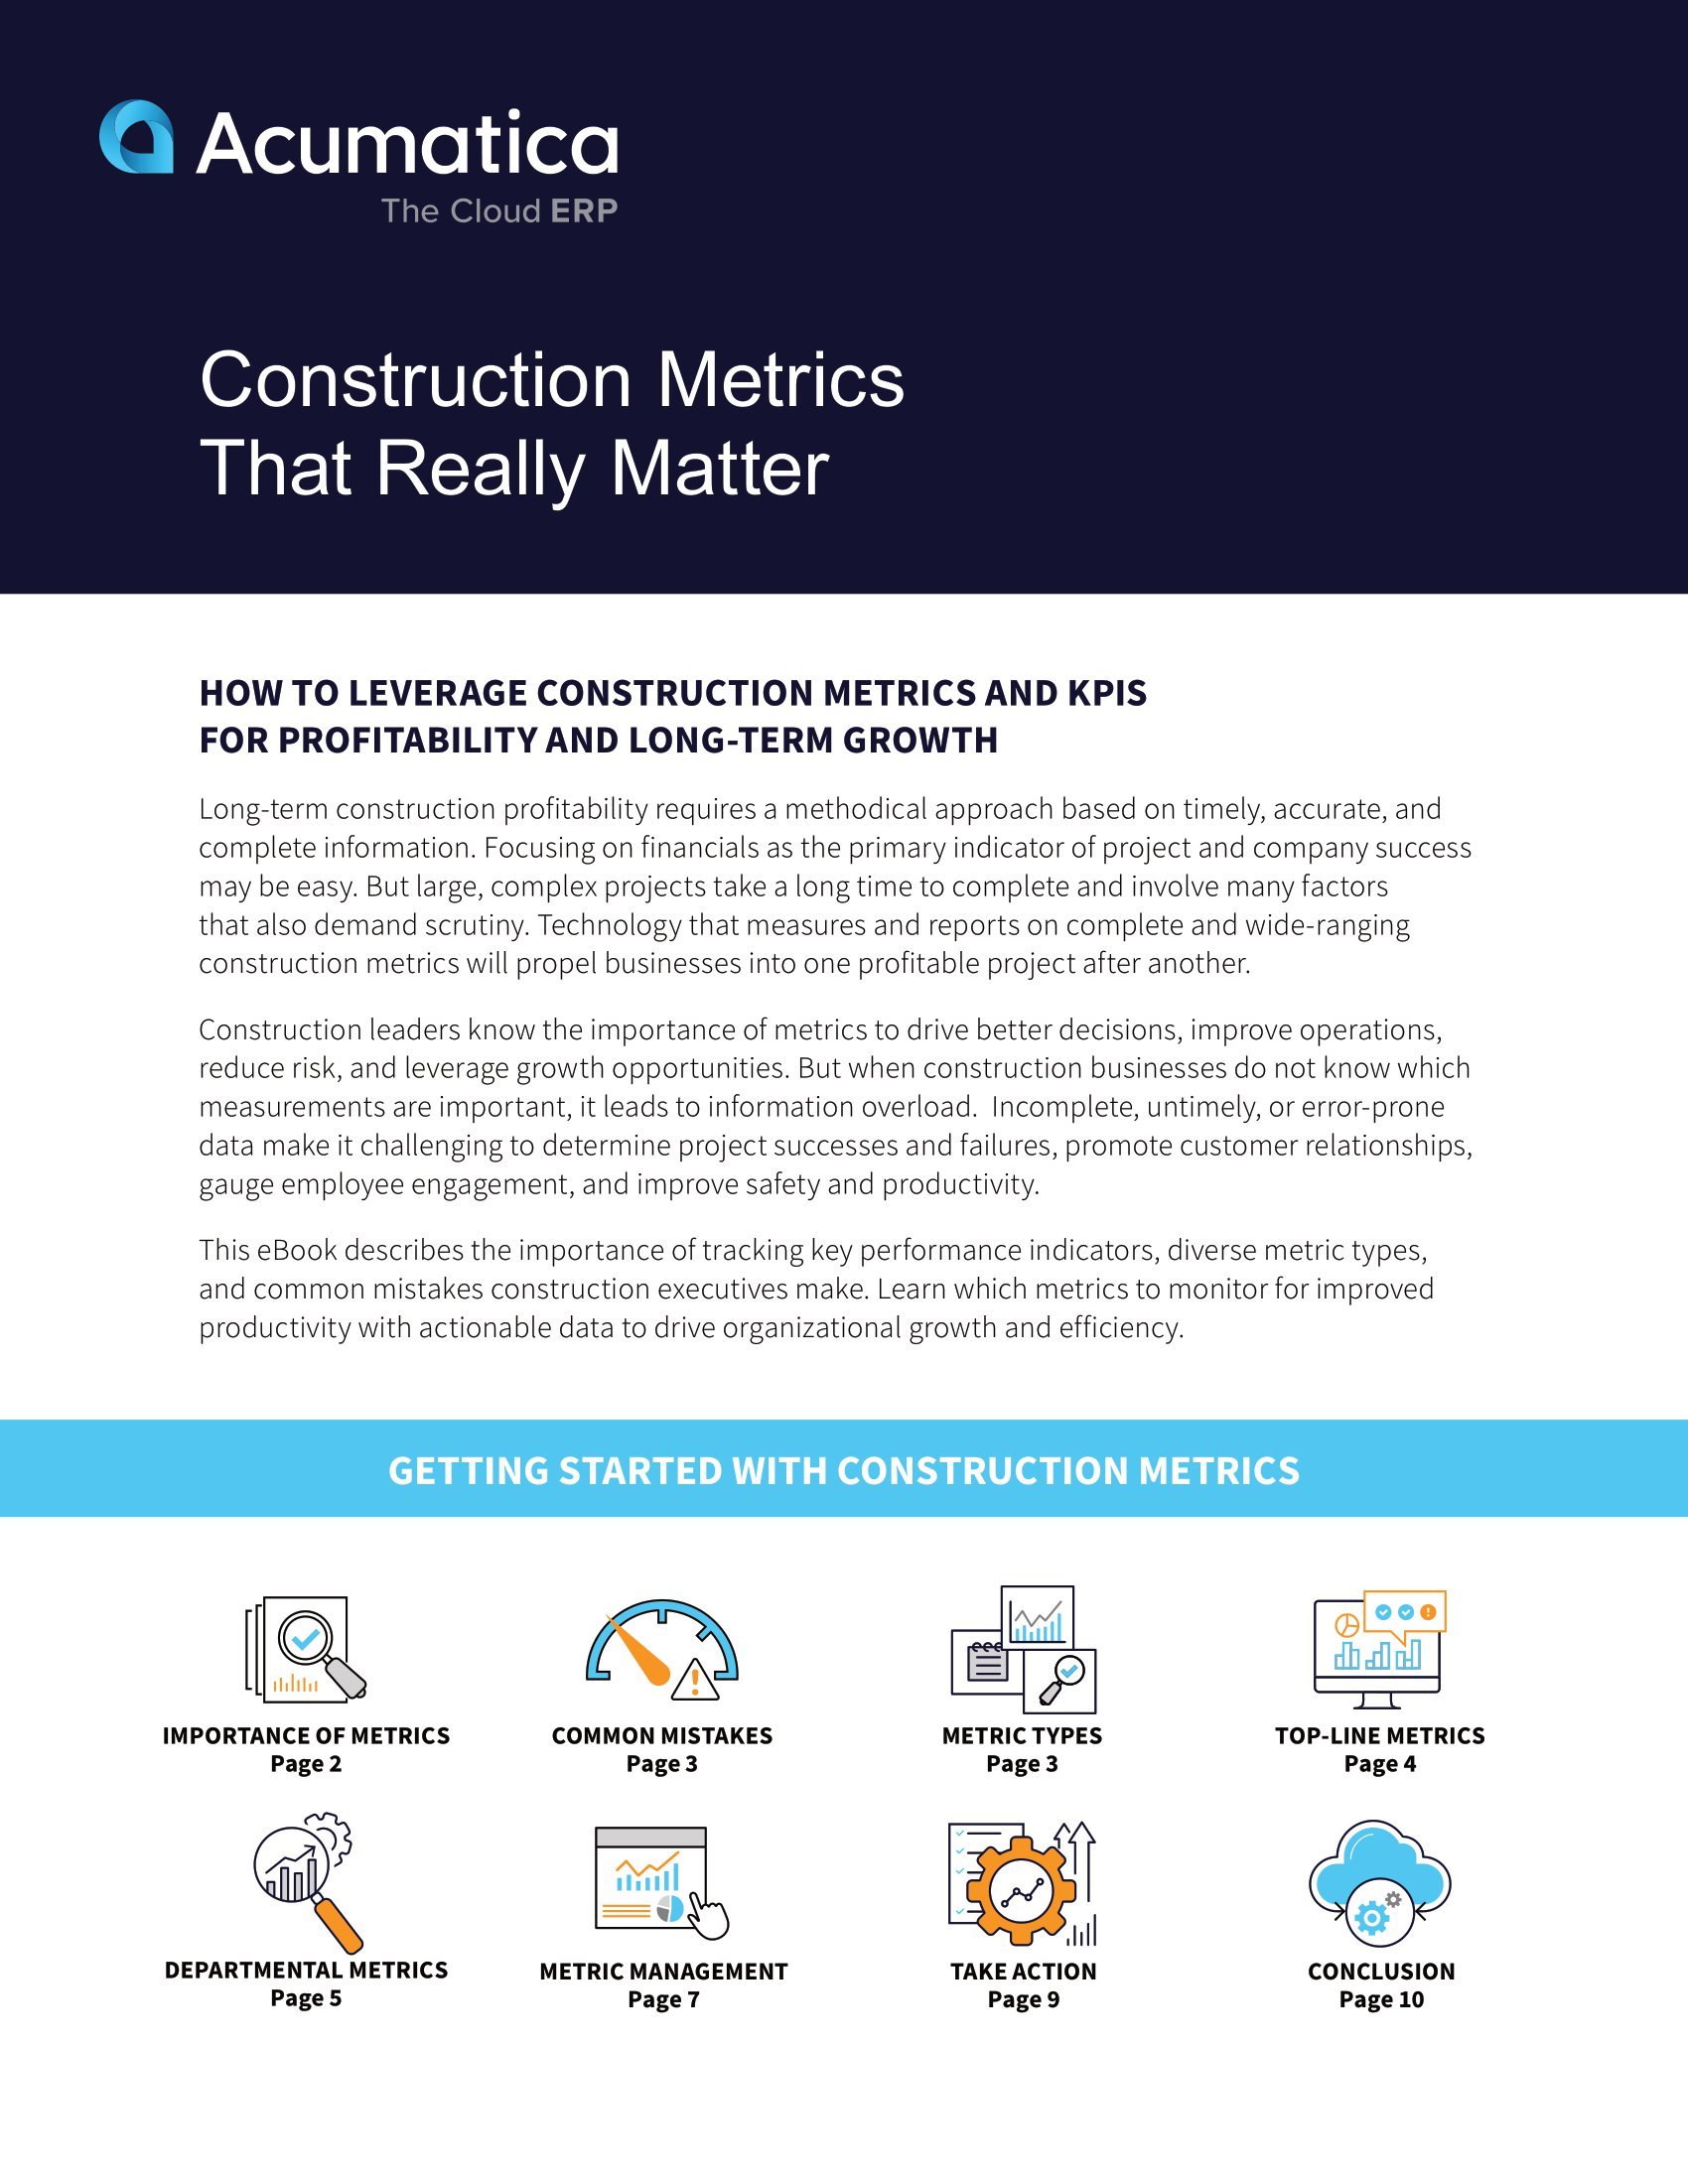 El crecimiento cuantificable empieza por medir las métricas de construcción adecuadas